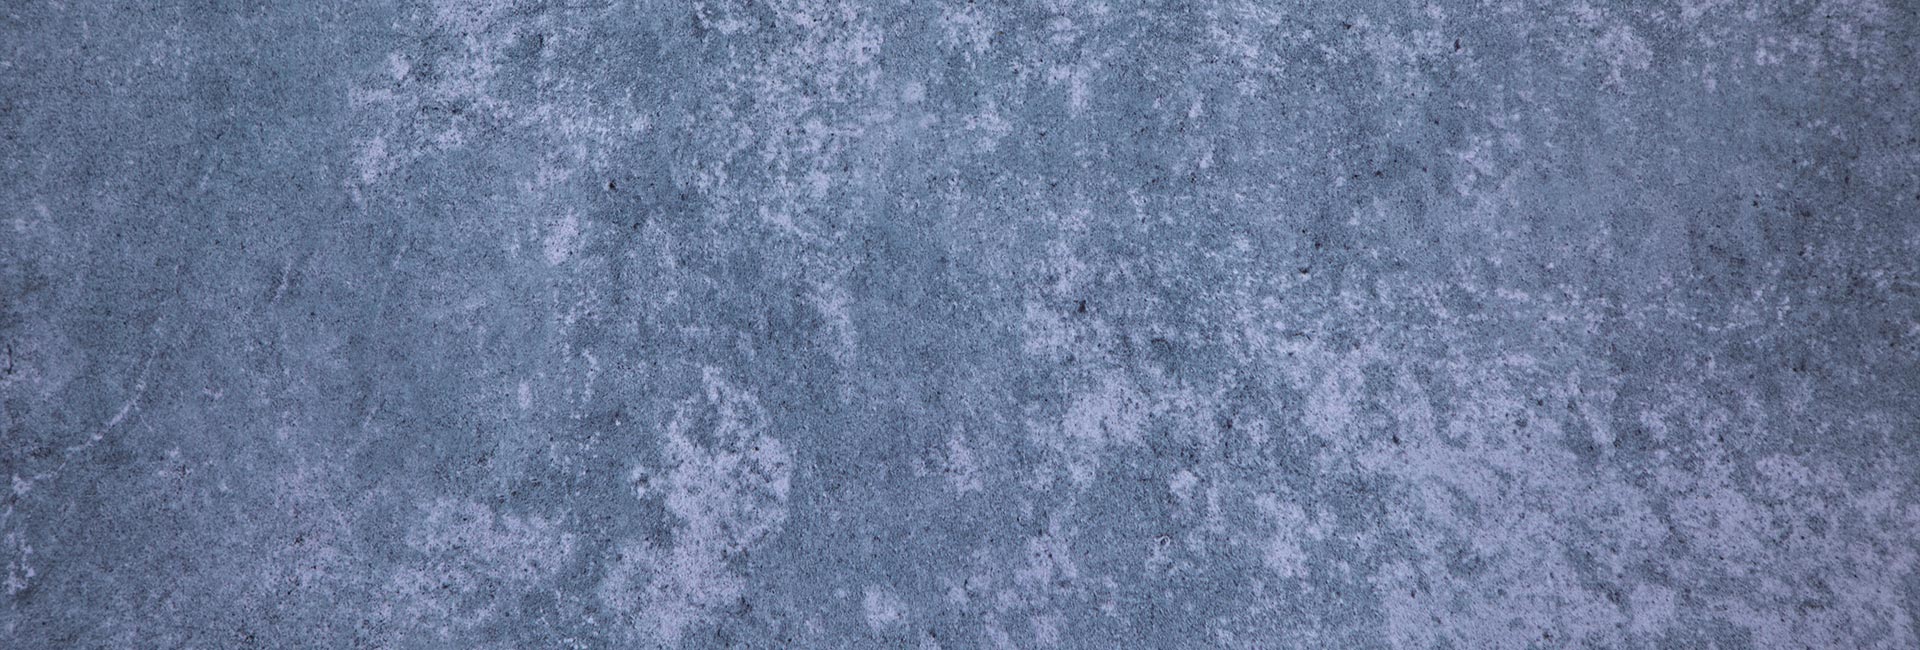 Cement or concrete texture